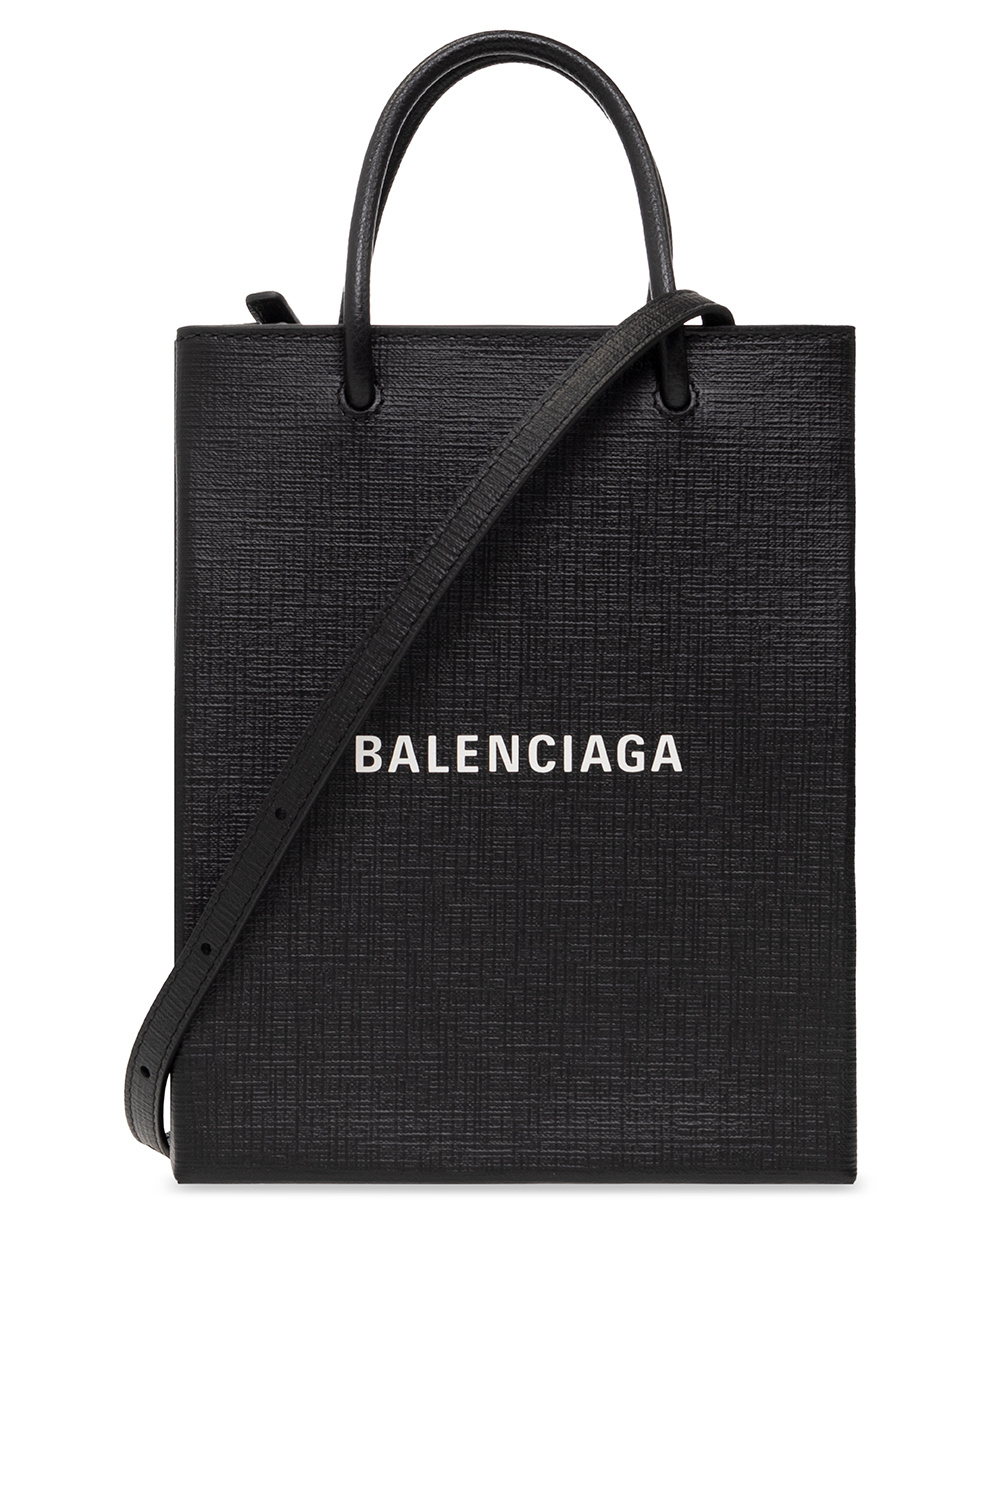 Balenciaga ‘Shopping’ shoulder bag